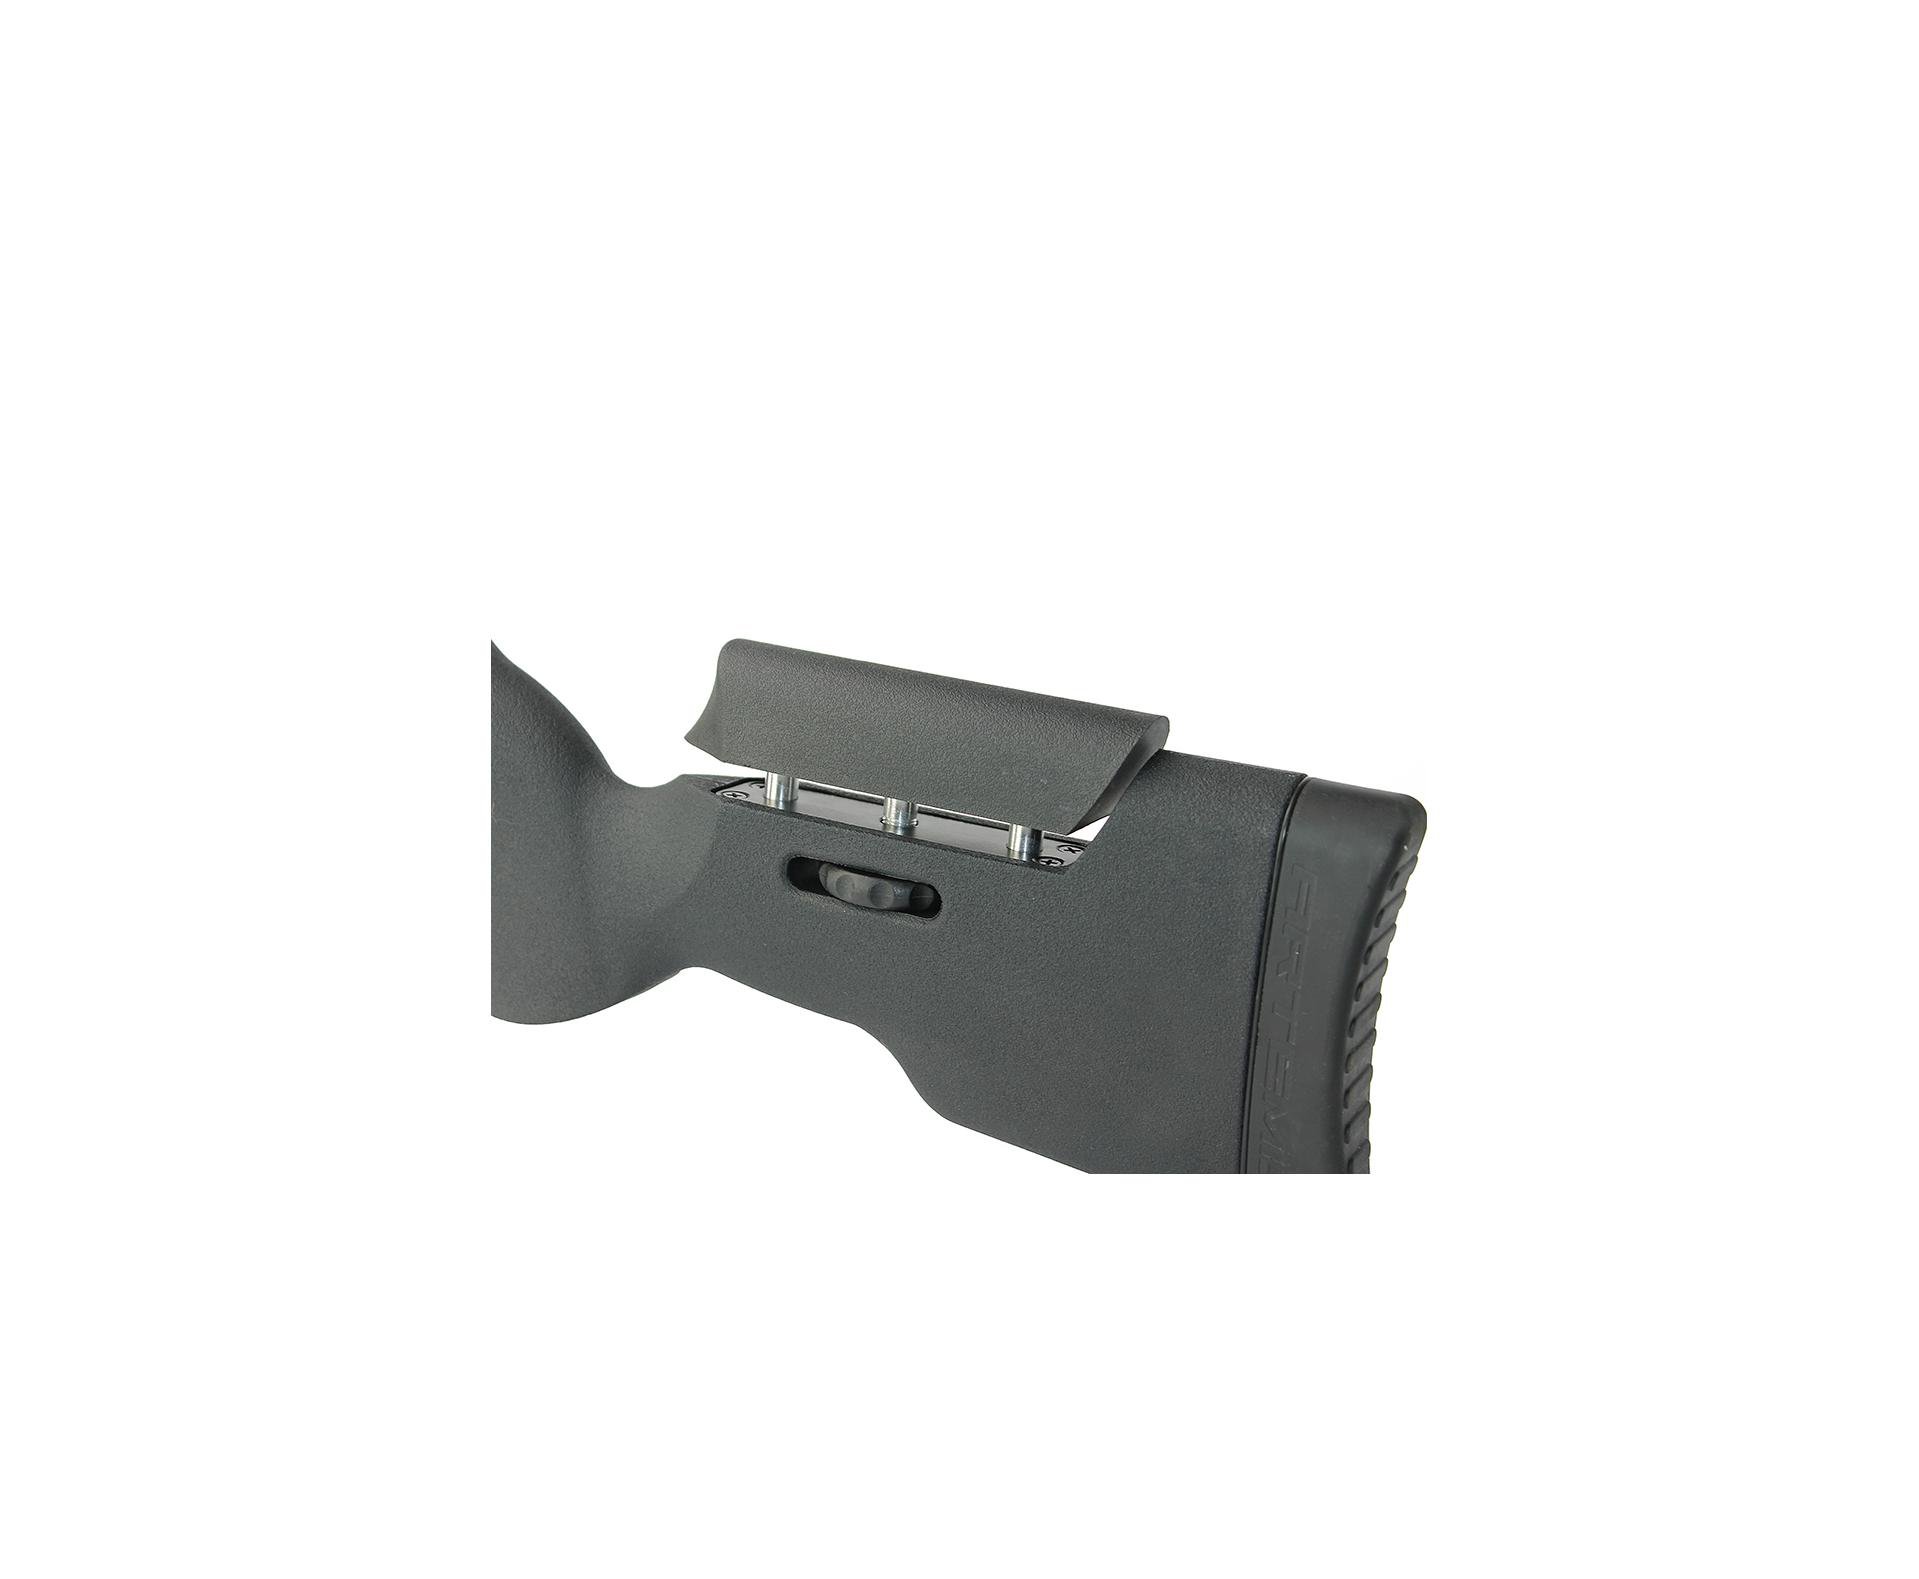 Carabina De Pressão Artemis Gp 1250 Sniper Gas Ram 70kg Black 5,5mm + Bipé + Luneta + Supressor